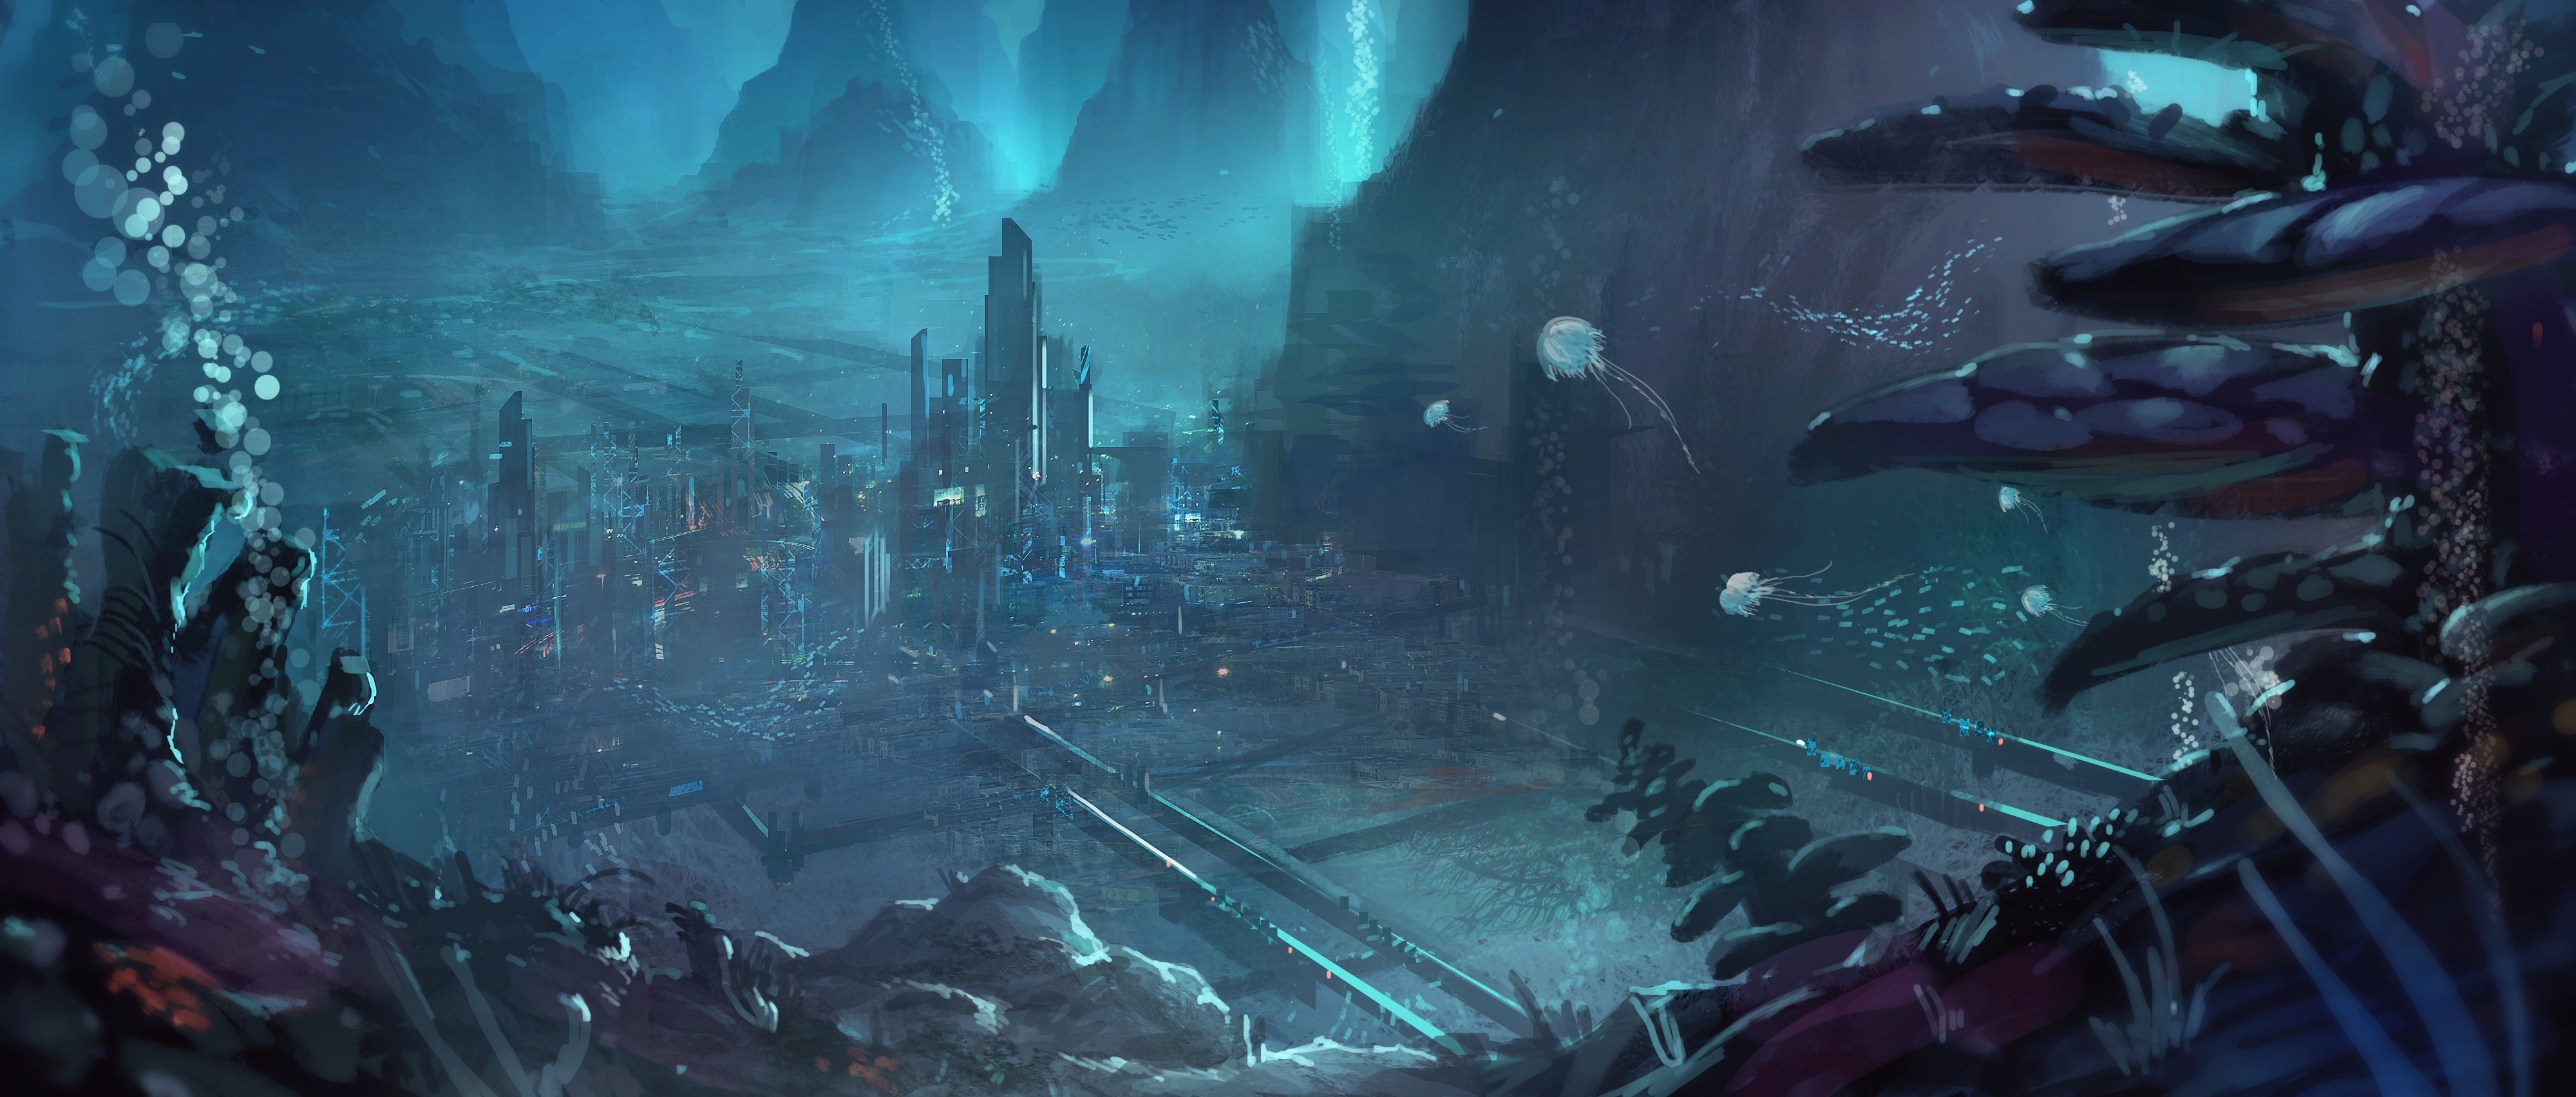 Backgrounds For Alien City 4K wallpaper